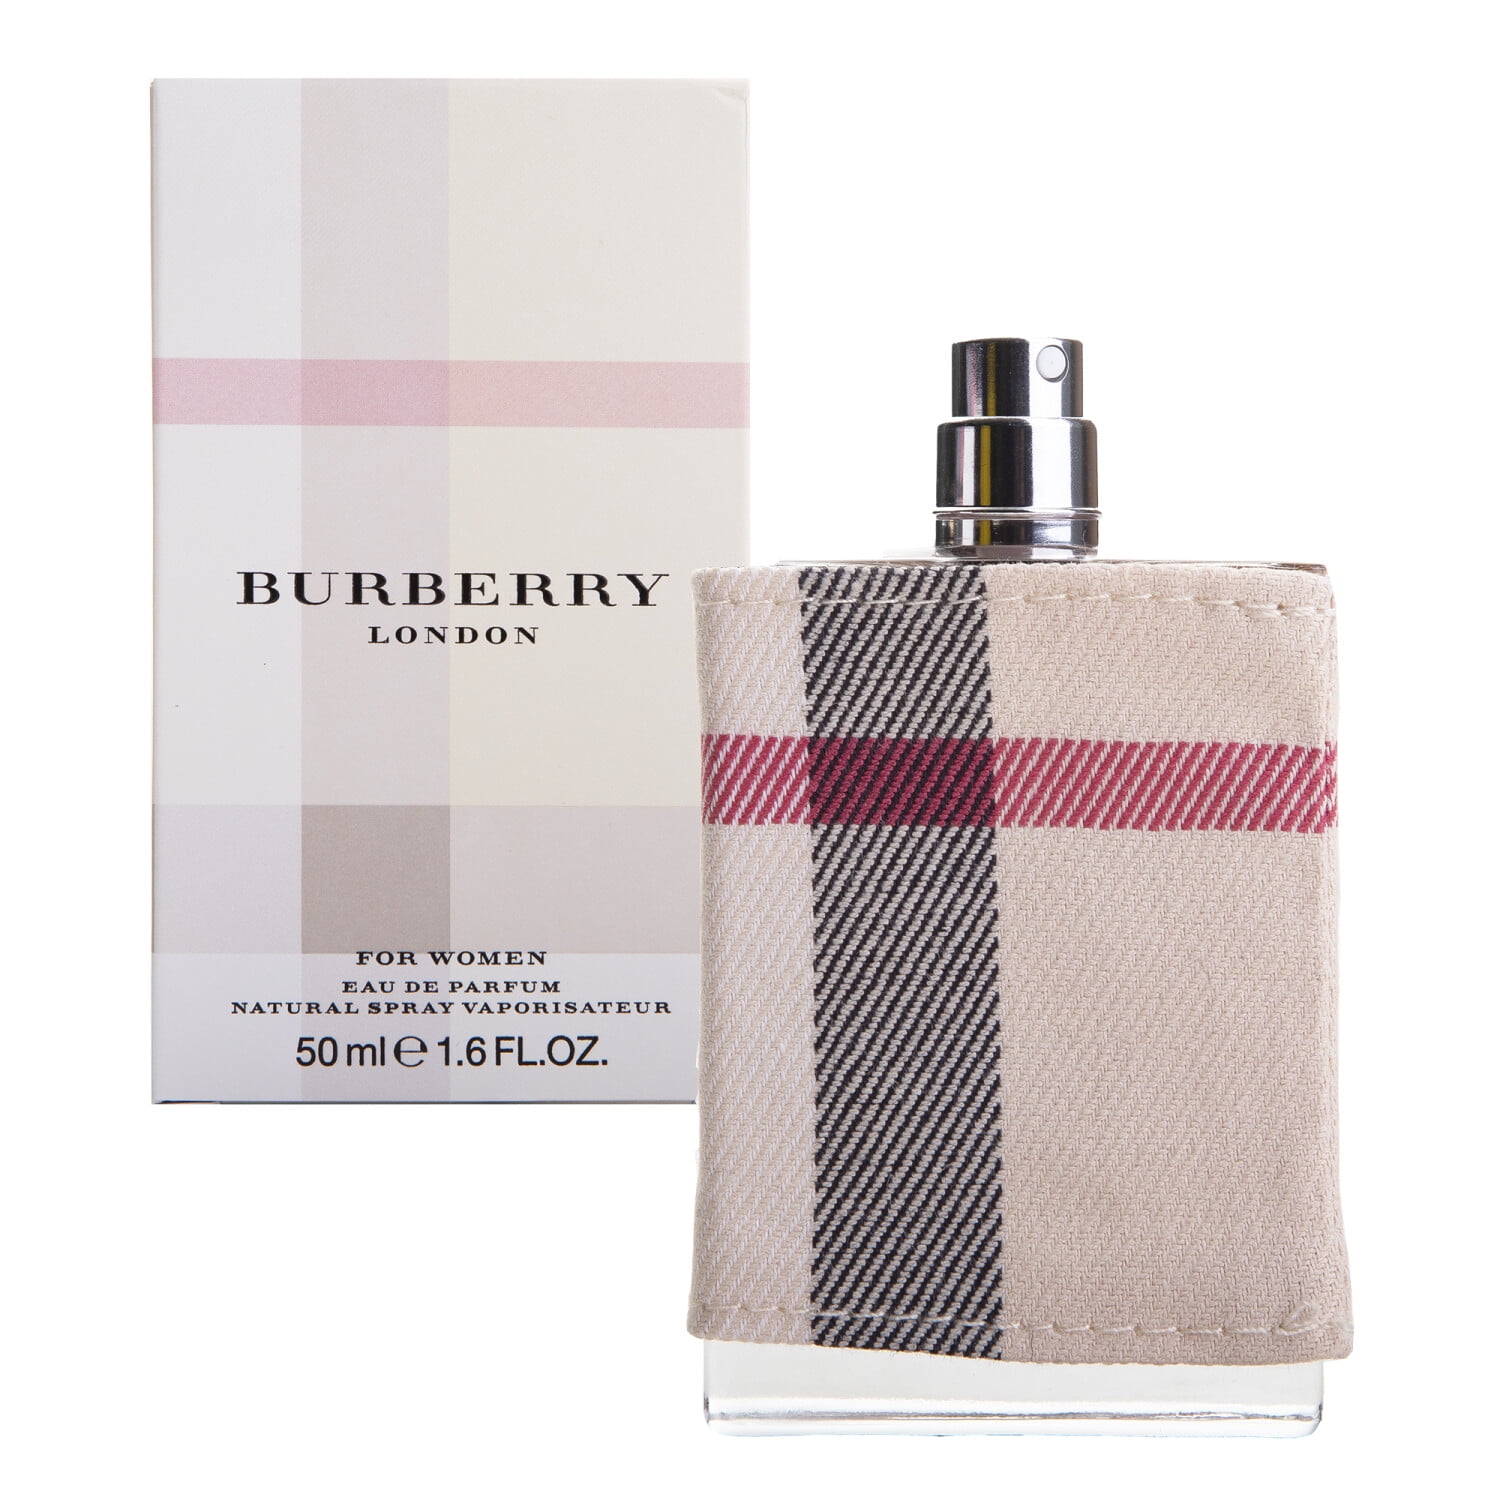 Burberry - Burberry London Eau de Parfum Spray for Women - 1.6 oz ...